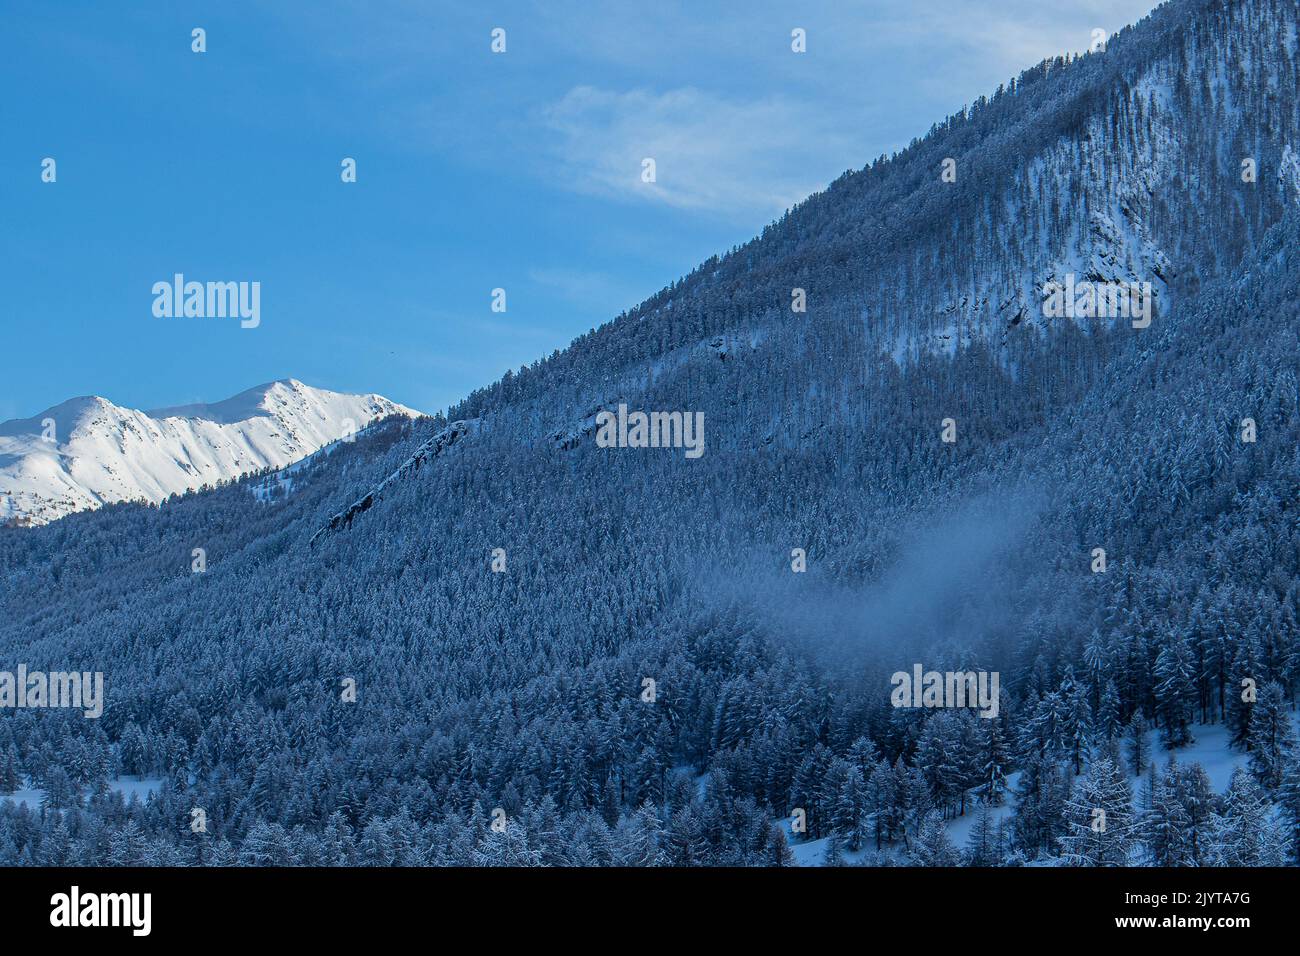 Snowy forest near the Col de Larche (Col de la Madeleine), northern part of the Mercantour National Park. Alpes-de-Haute-Provence, France Stock Photo